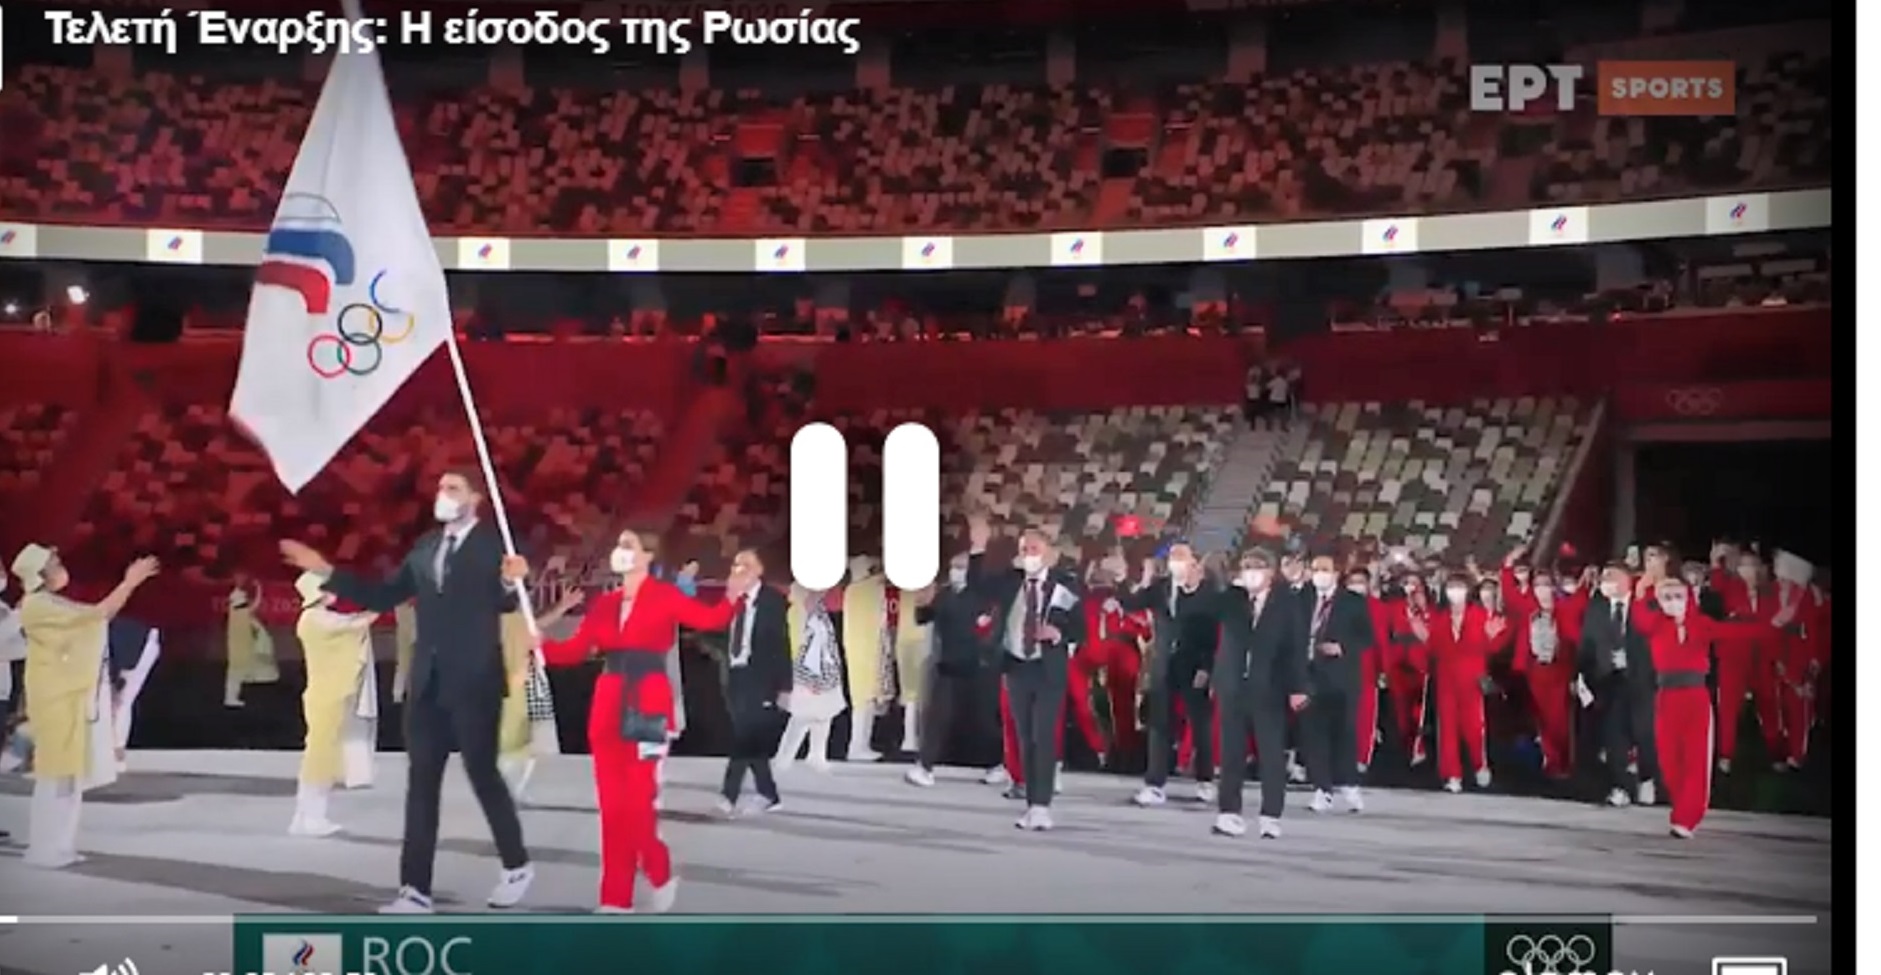 Ολυμπιακοί Αγώνες Τόκιο 2020: Τιμωρημένη η Ρωσία – Με άλλη σημαία οι αθλητές